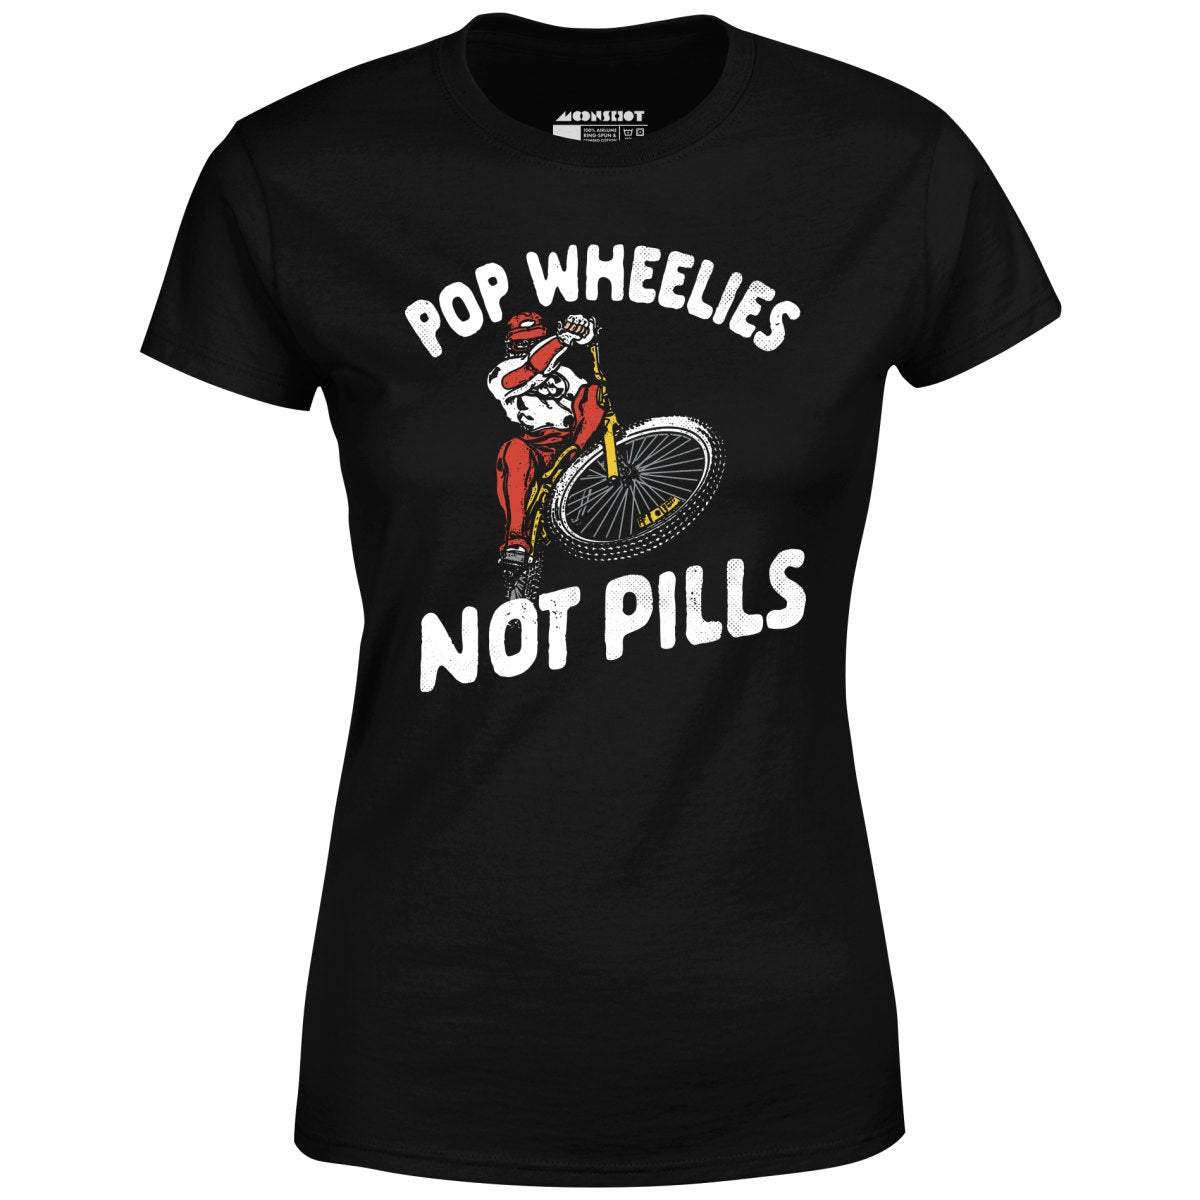 Pop Wheelies Not Pills - Women's T-Shirt